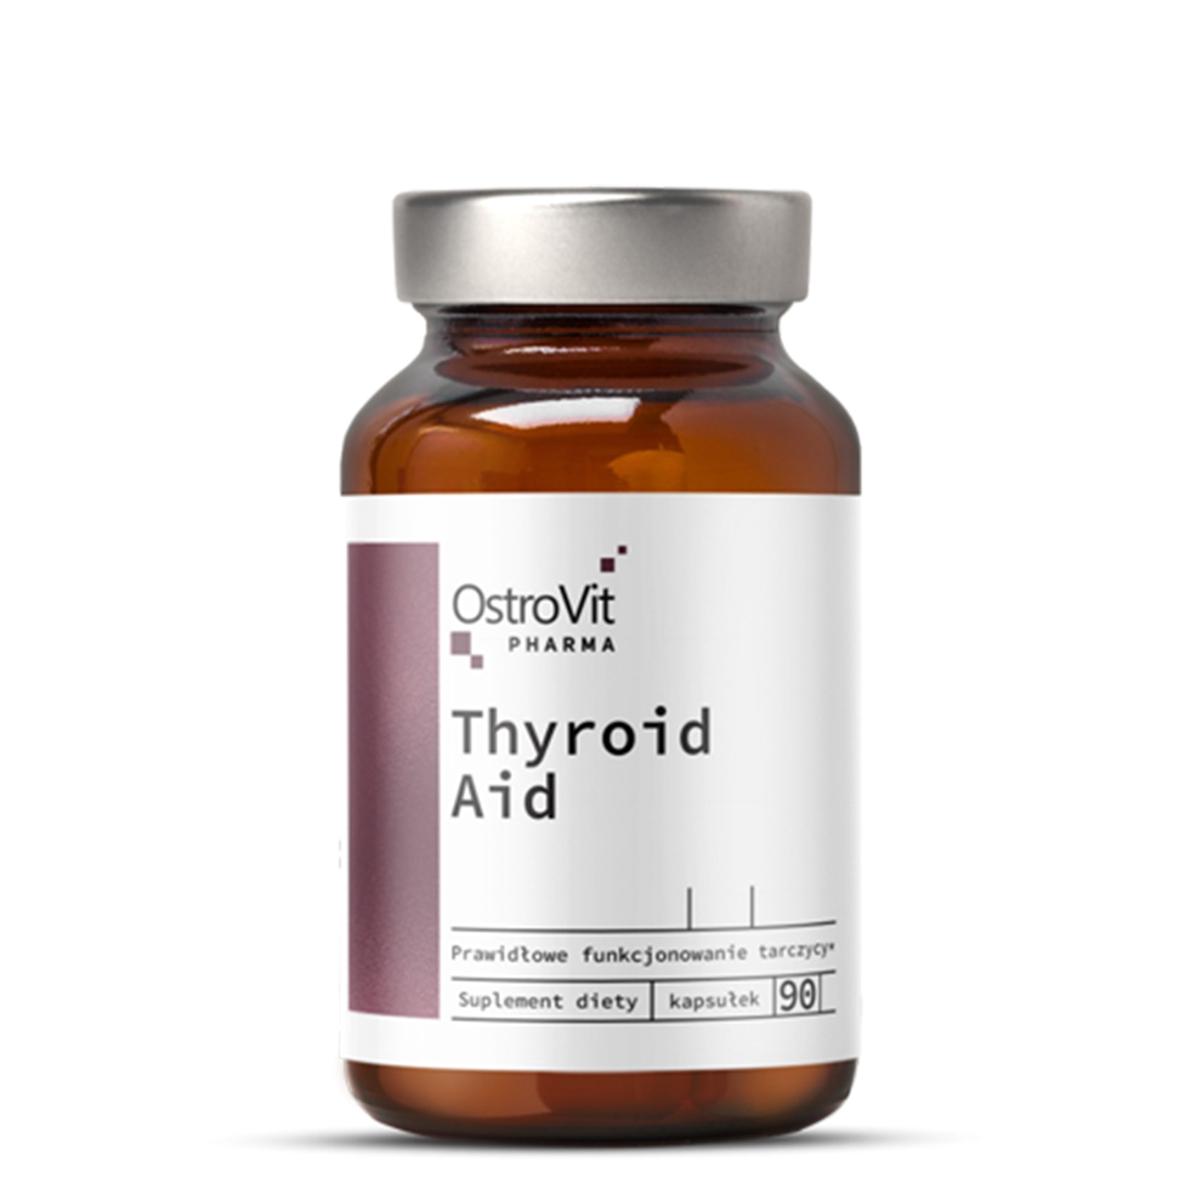 OSTROVIT Pharma Thyroid Aid 90 kapsula